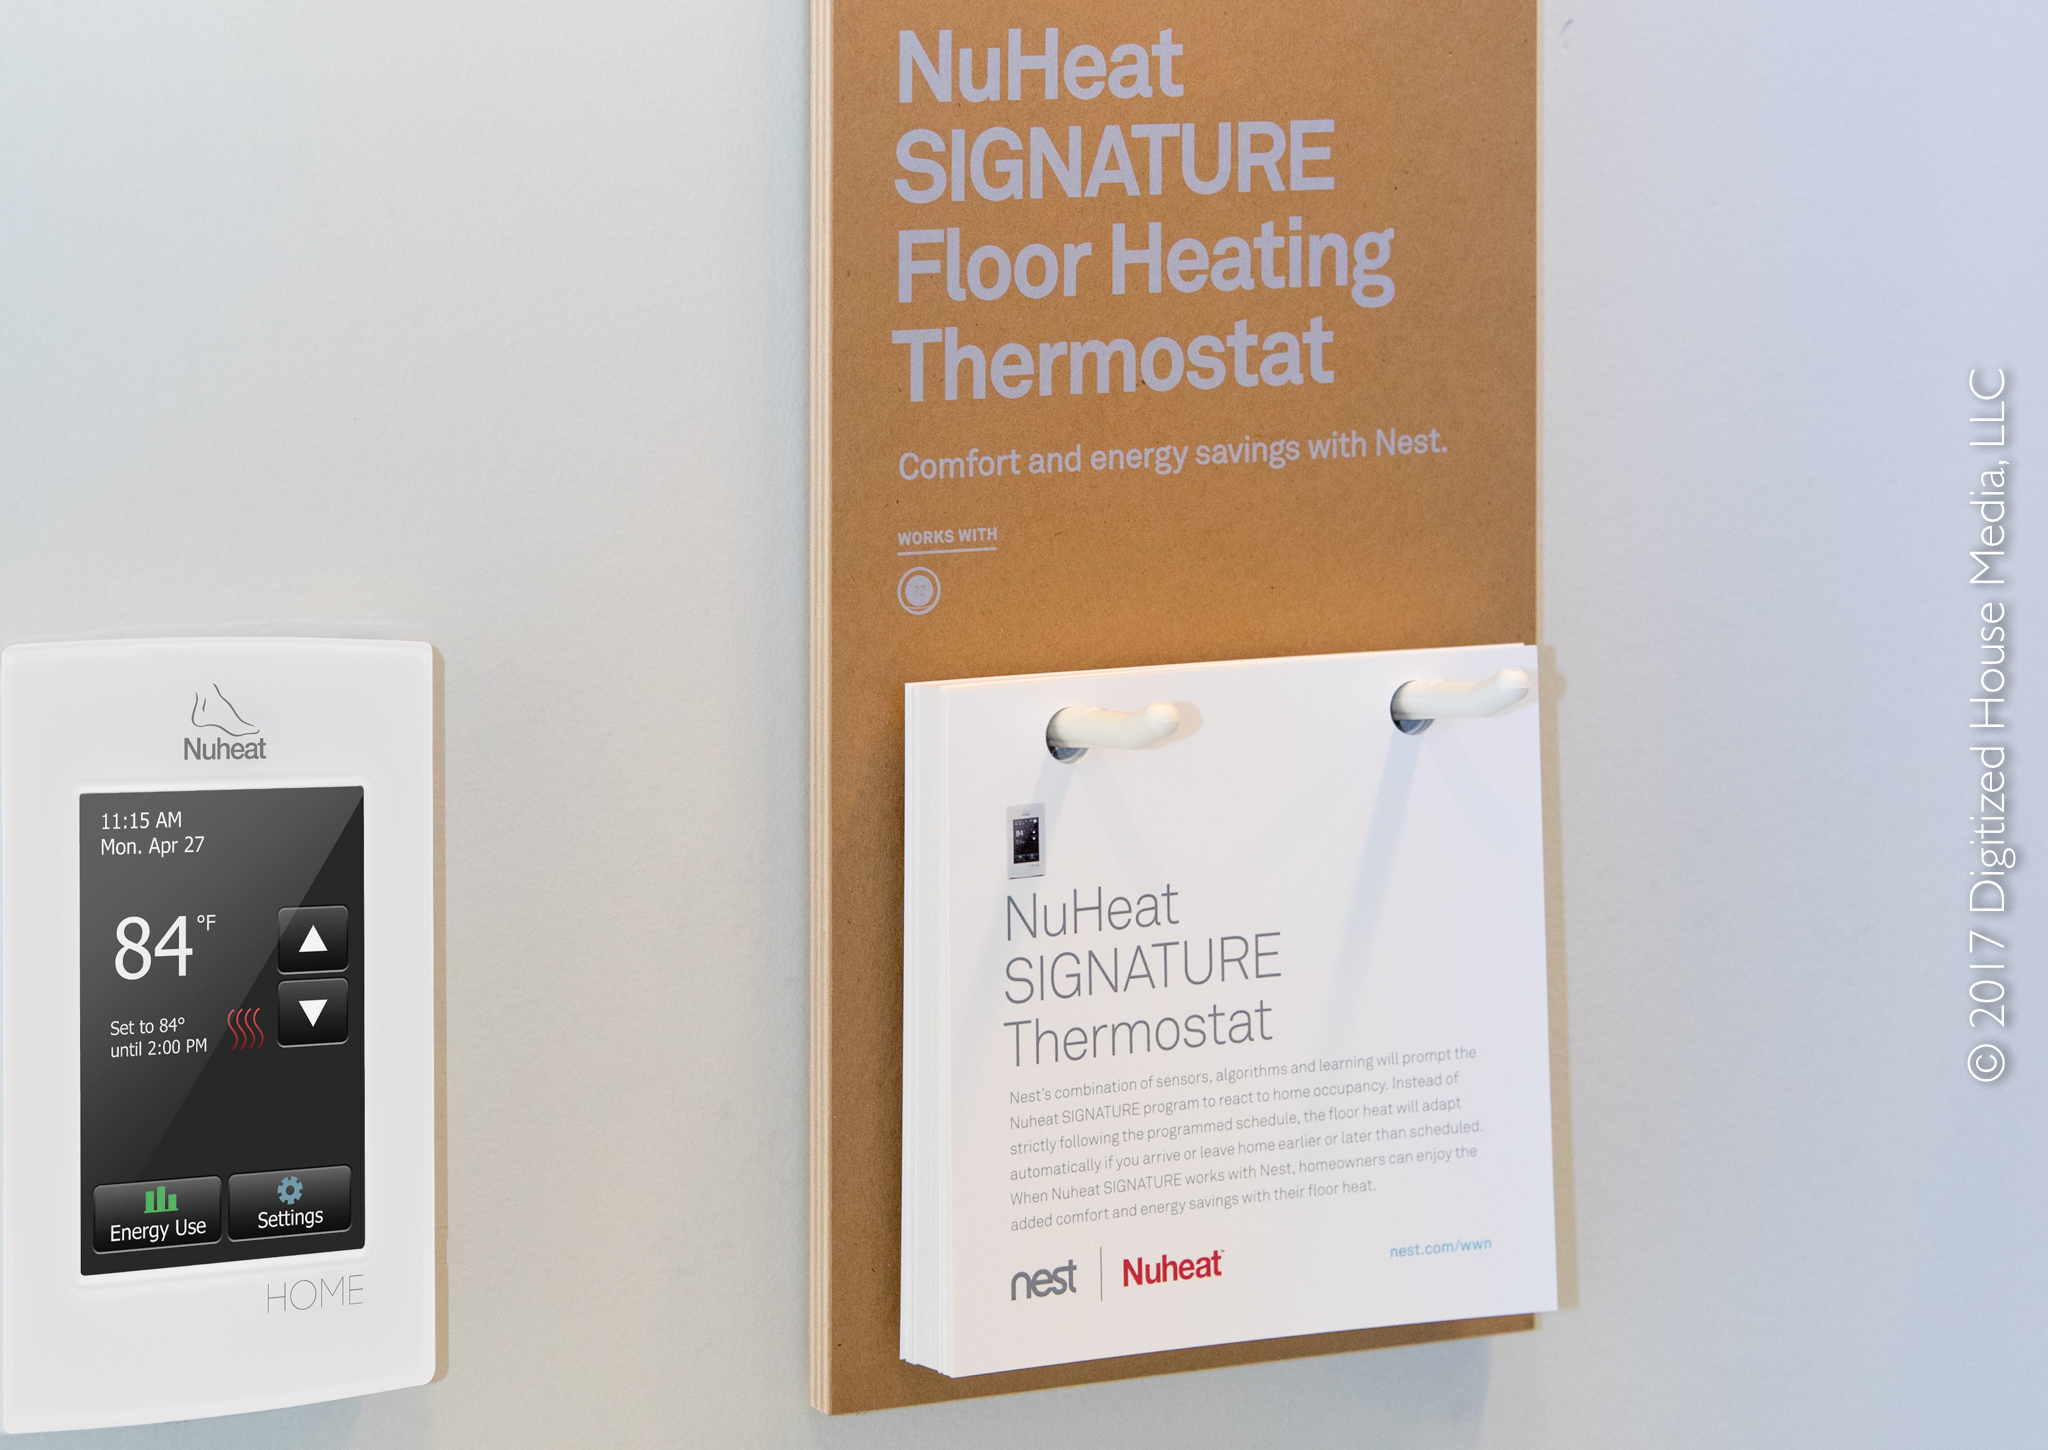 NuHeat Signature Floor Heating Thermostat